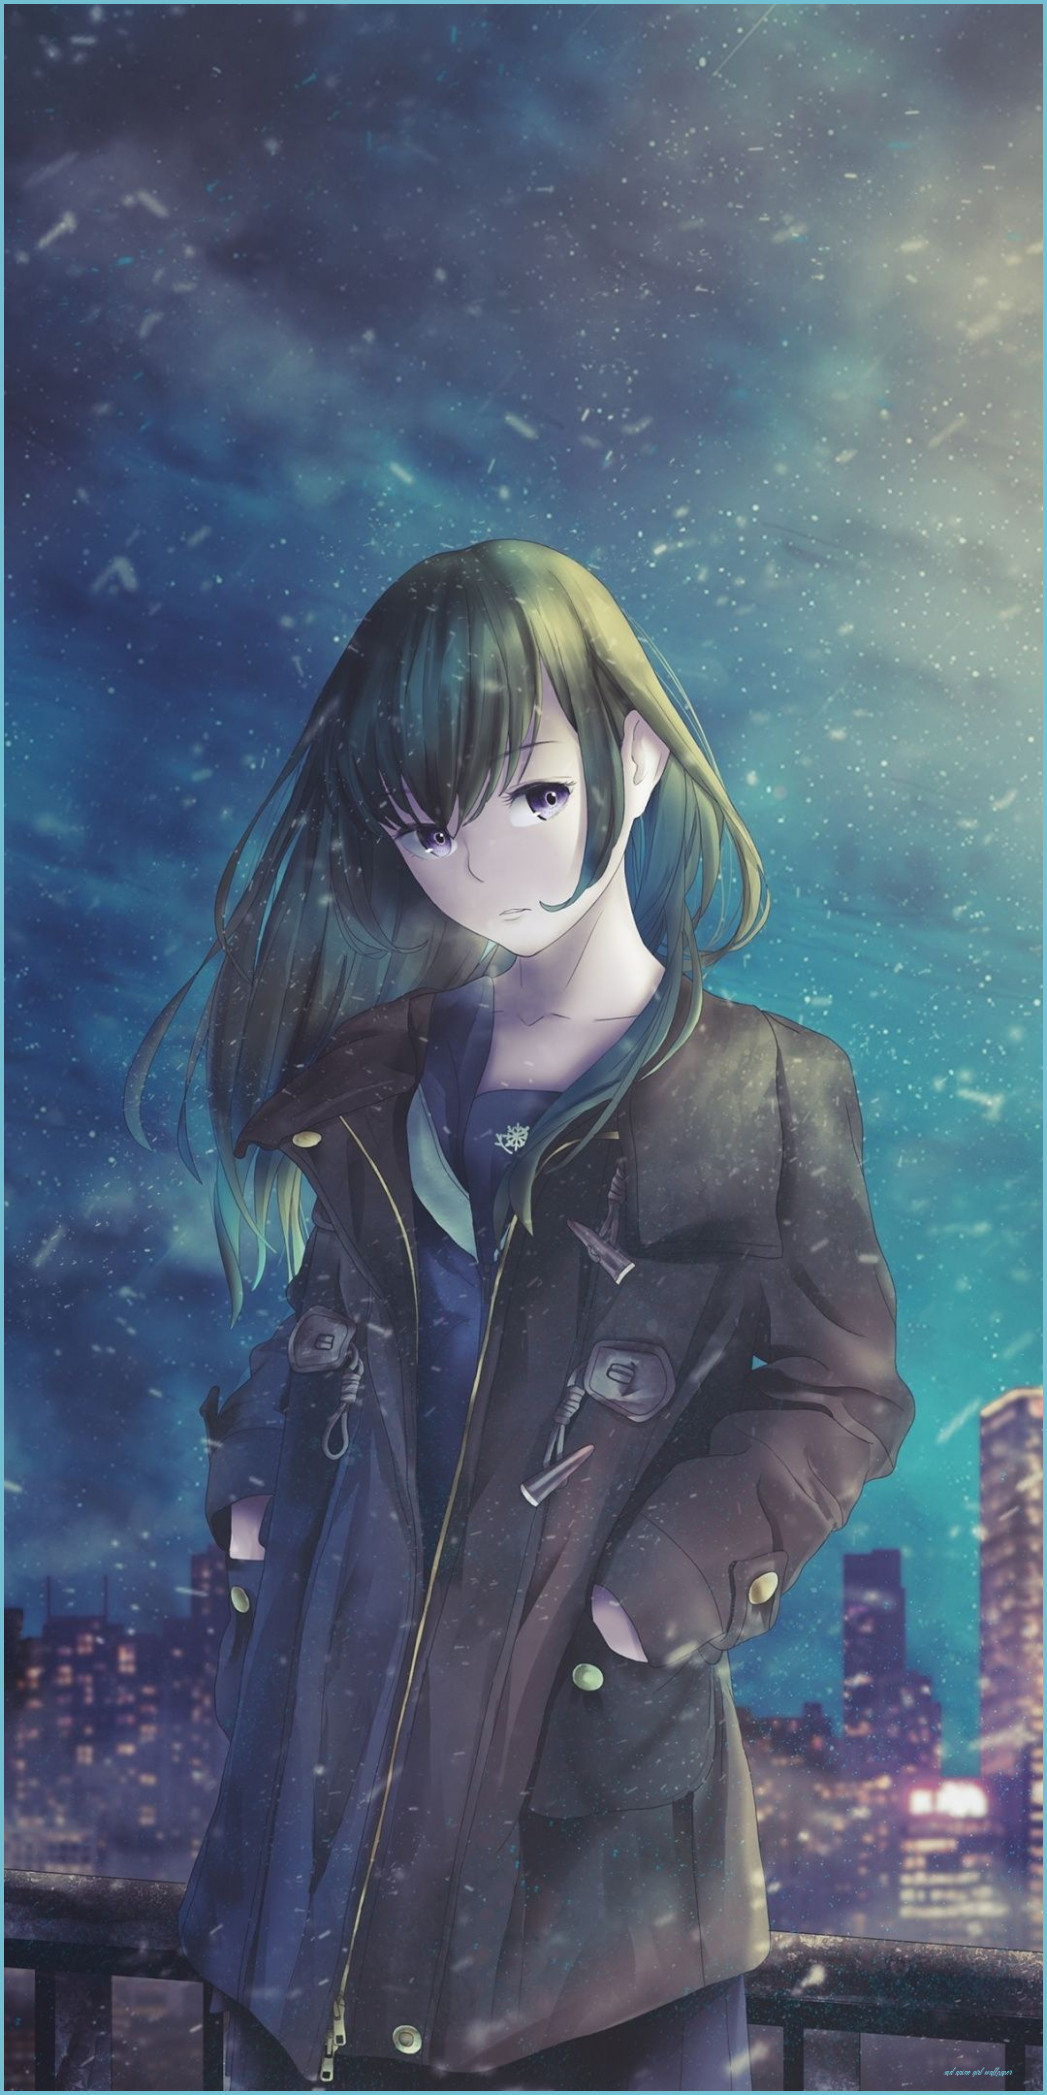 Wallpaper anime sad girl